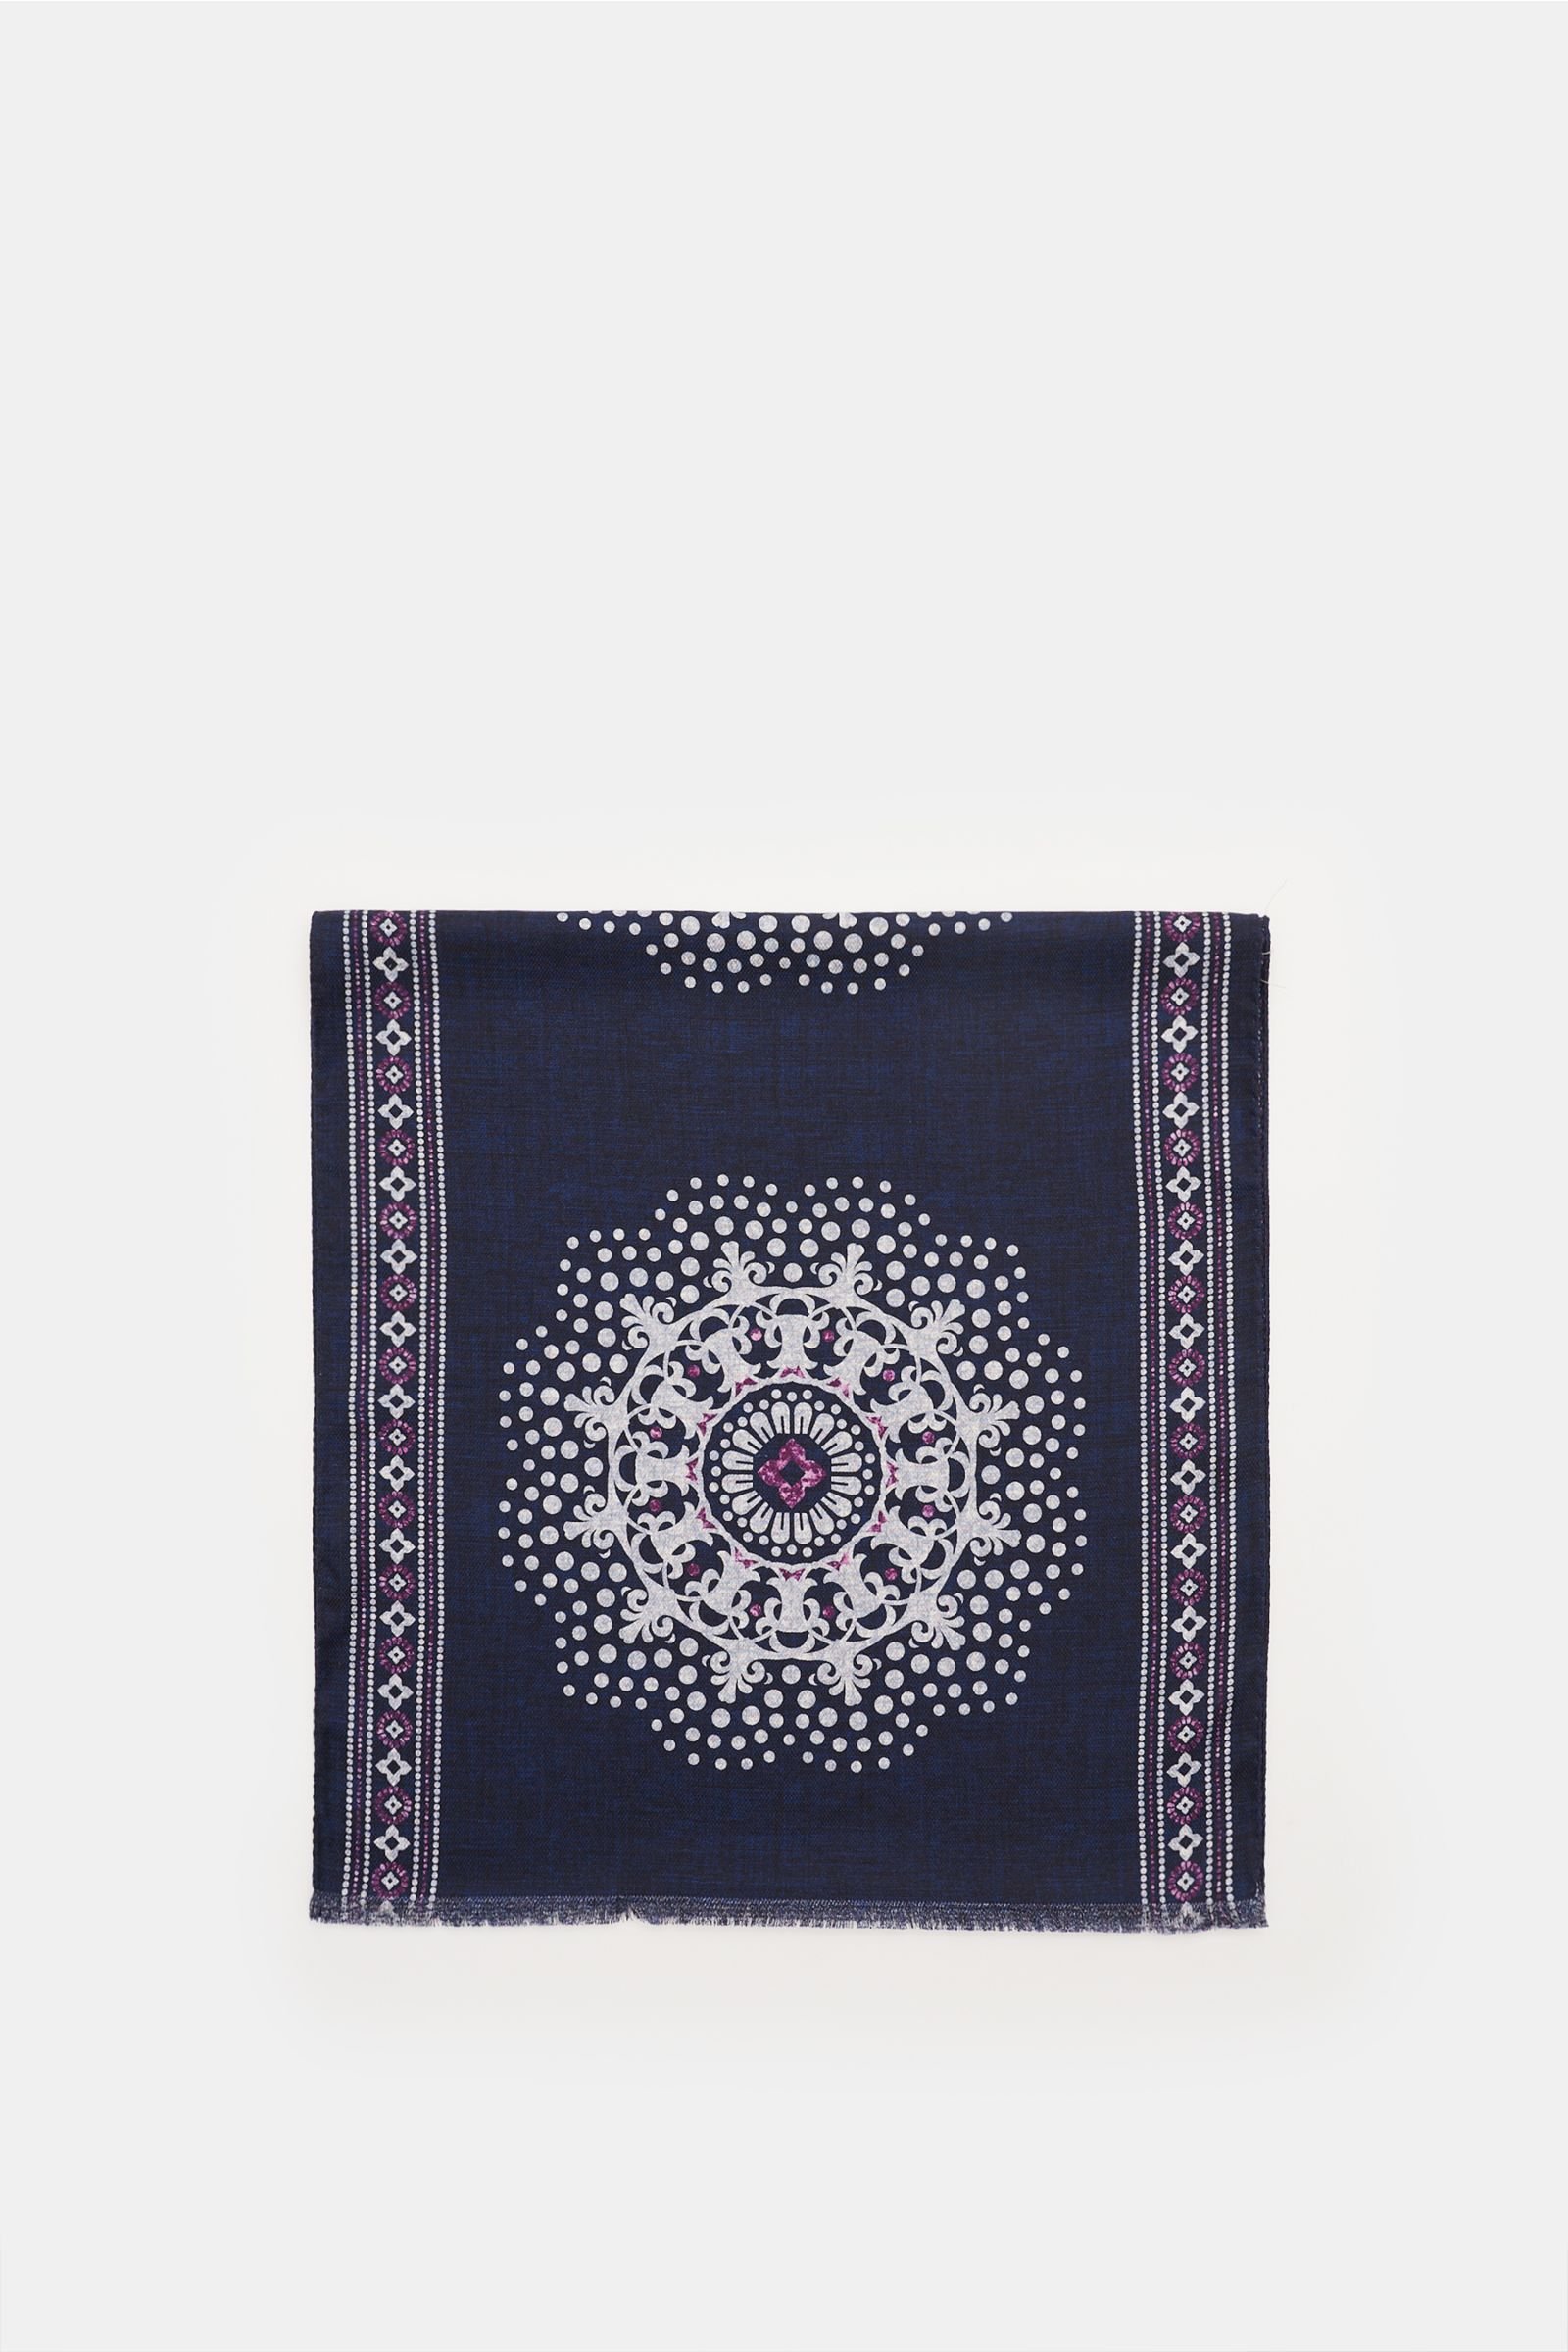 Silk scarf 'Salina' violet/navy, patterned